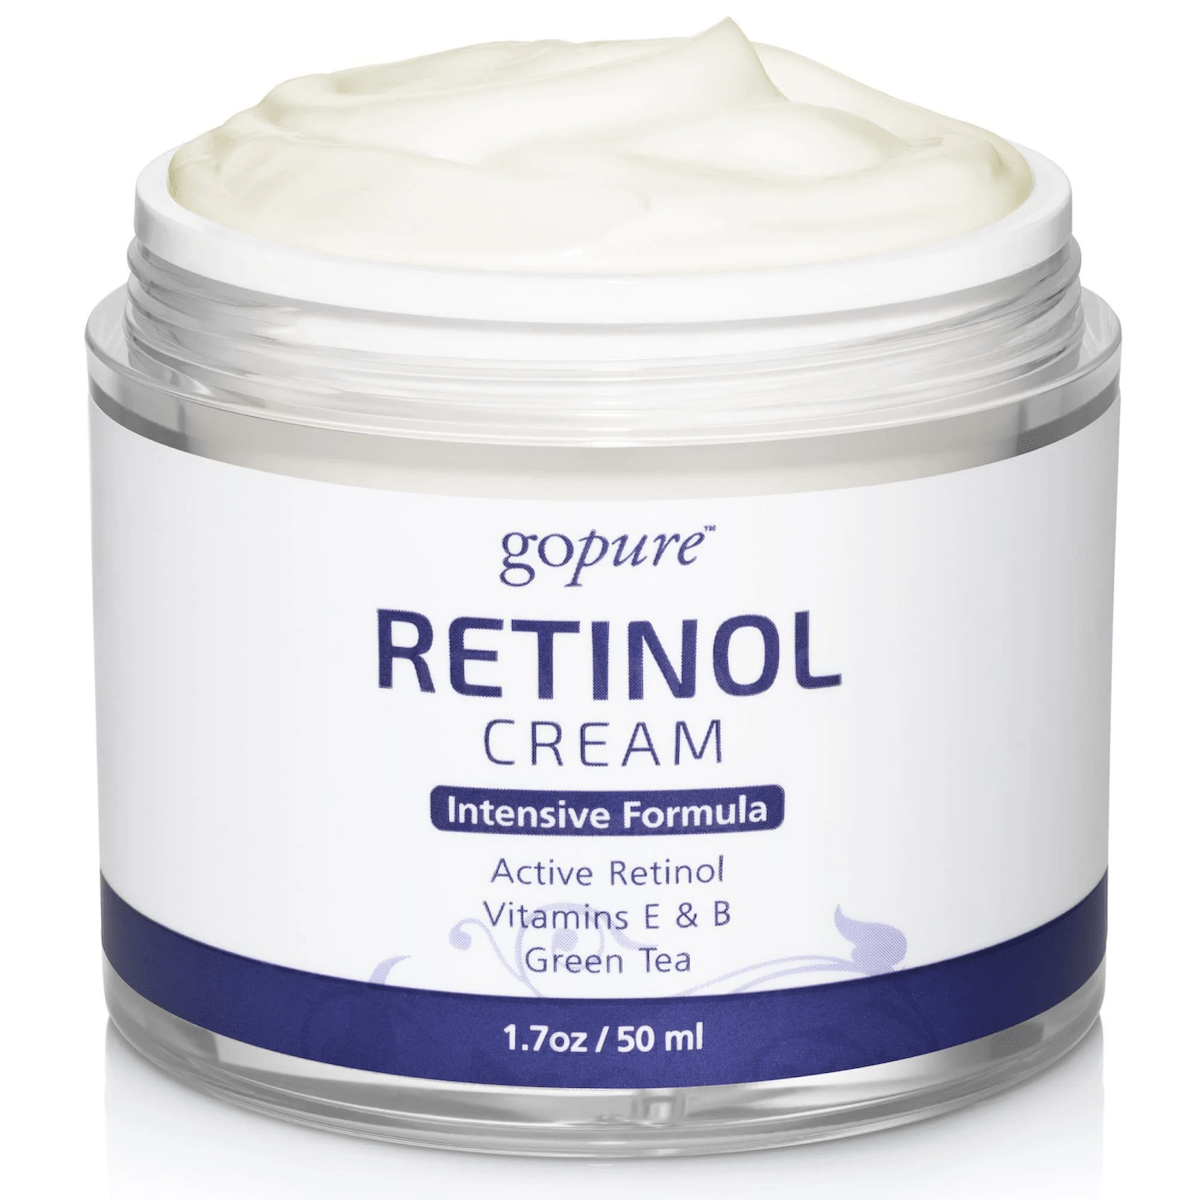 Facial Retinol Cream